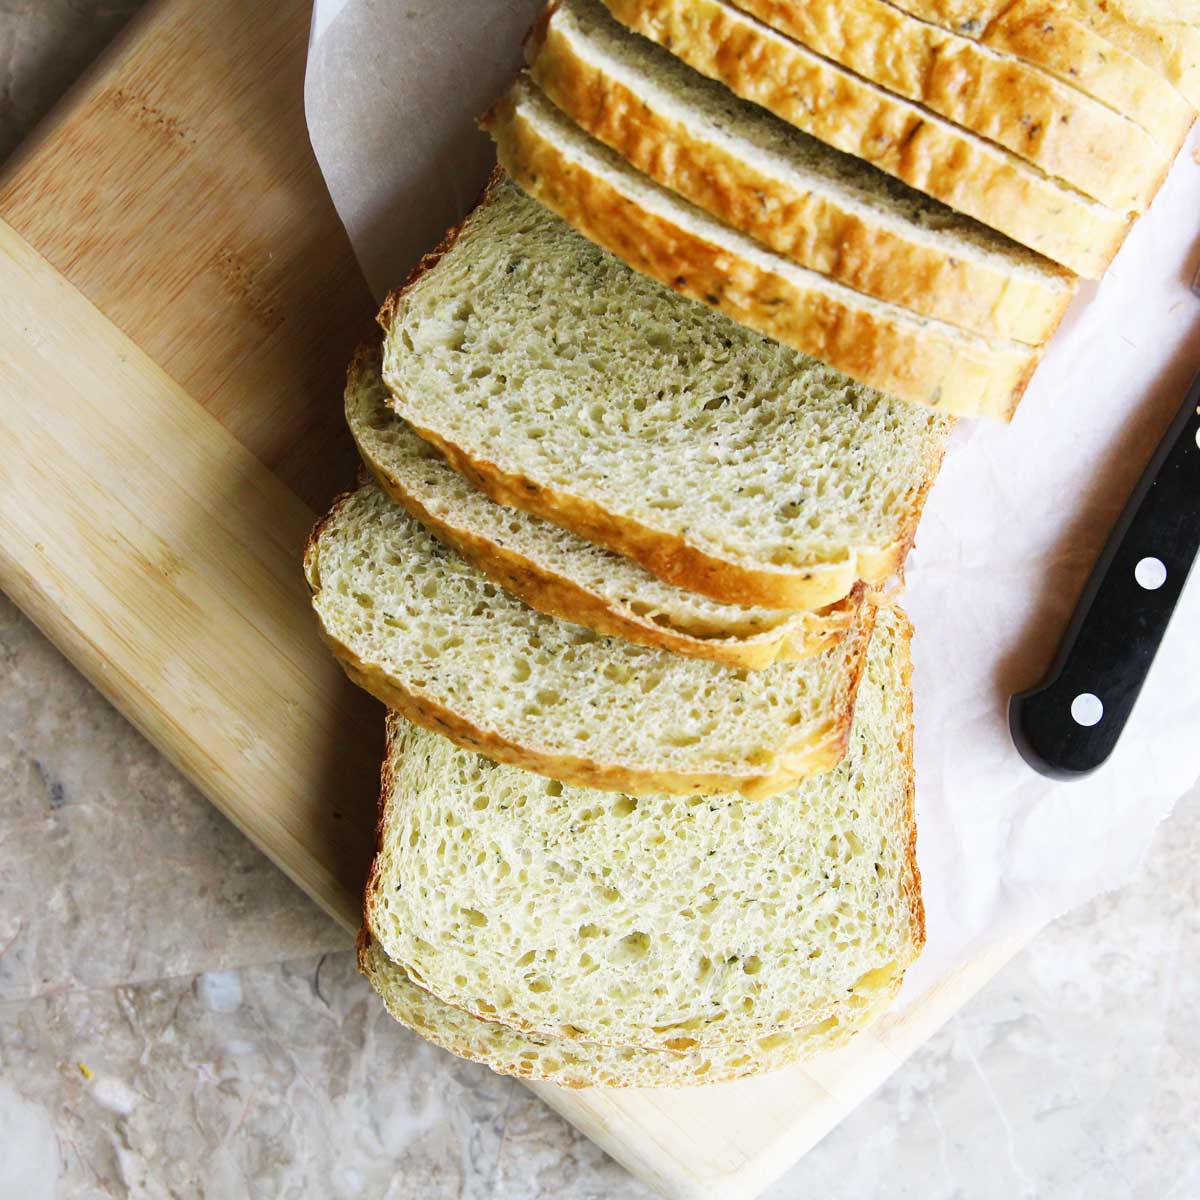 Peanut Butter Yeast Bread (A Healthier Vegan "Brioche" Recipe) - bread